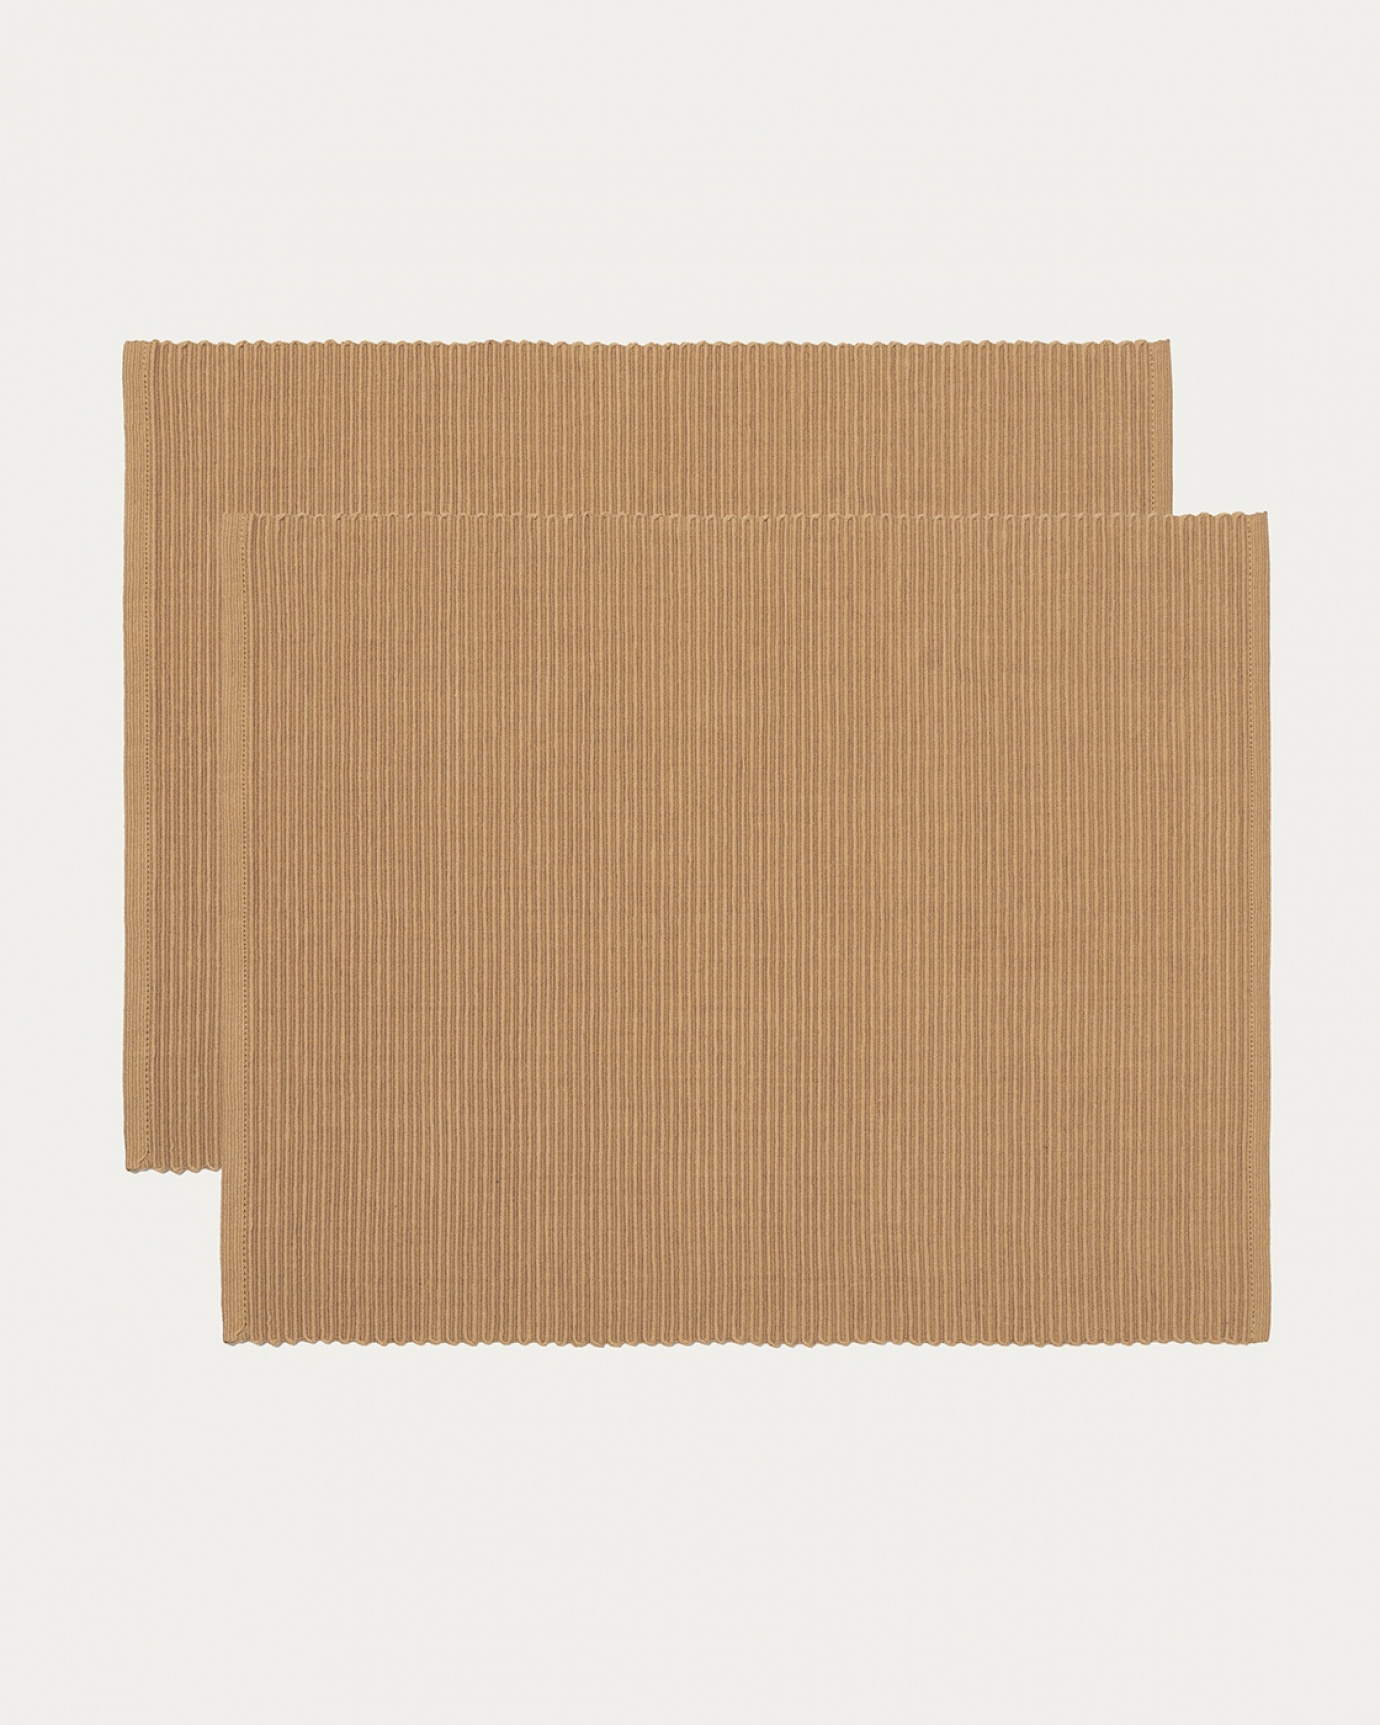 Immagine prodotto marrone cammello tovaglietta UNI in morbido cotone a costine di qualità di LINUM DESIGN. Dimensioni 35x46 cm e venduto in 2-pezzi.